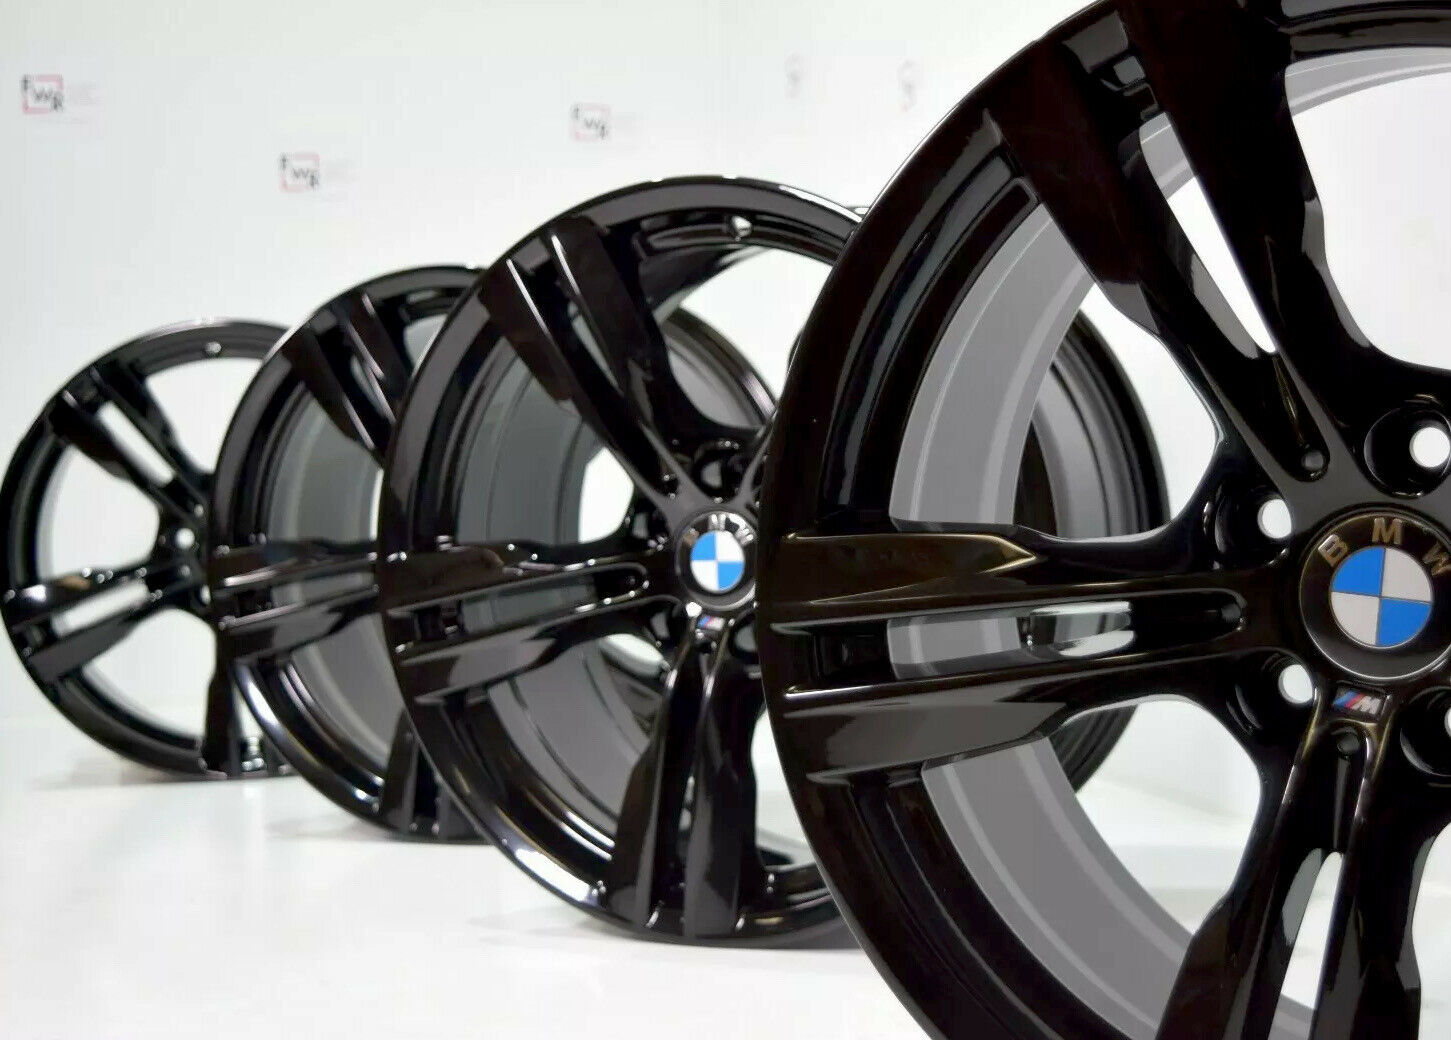 19″ BMW X5 467 M SPORT BLACK FACTORY OEM RIMS 19×9 860043 FITS 2007-2018 X5 X6